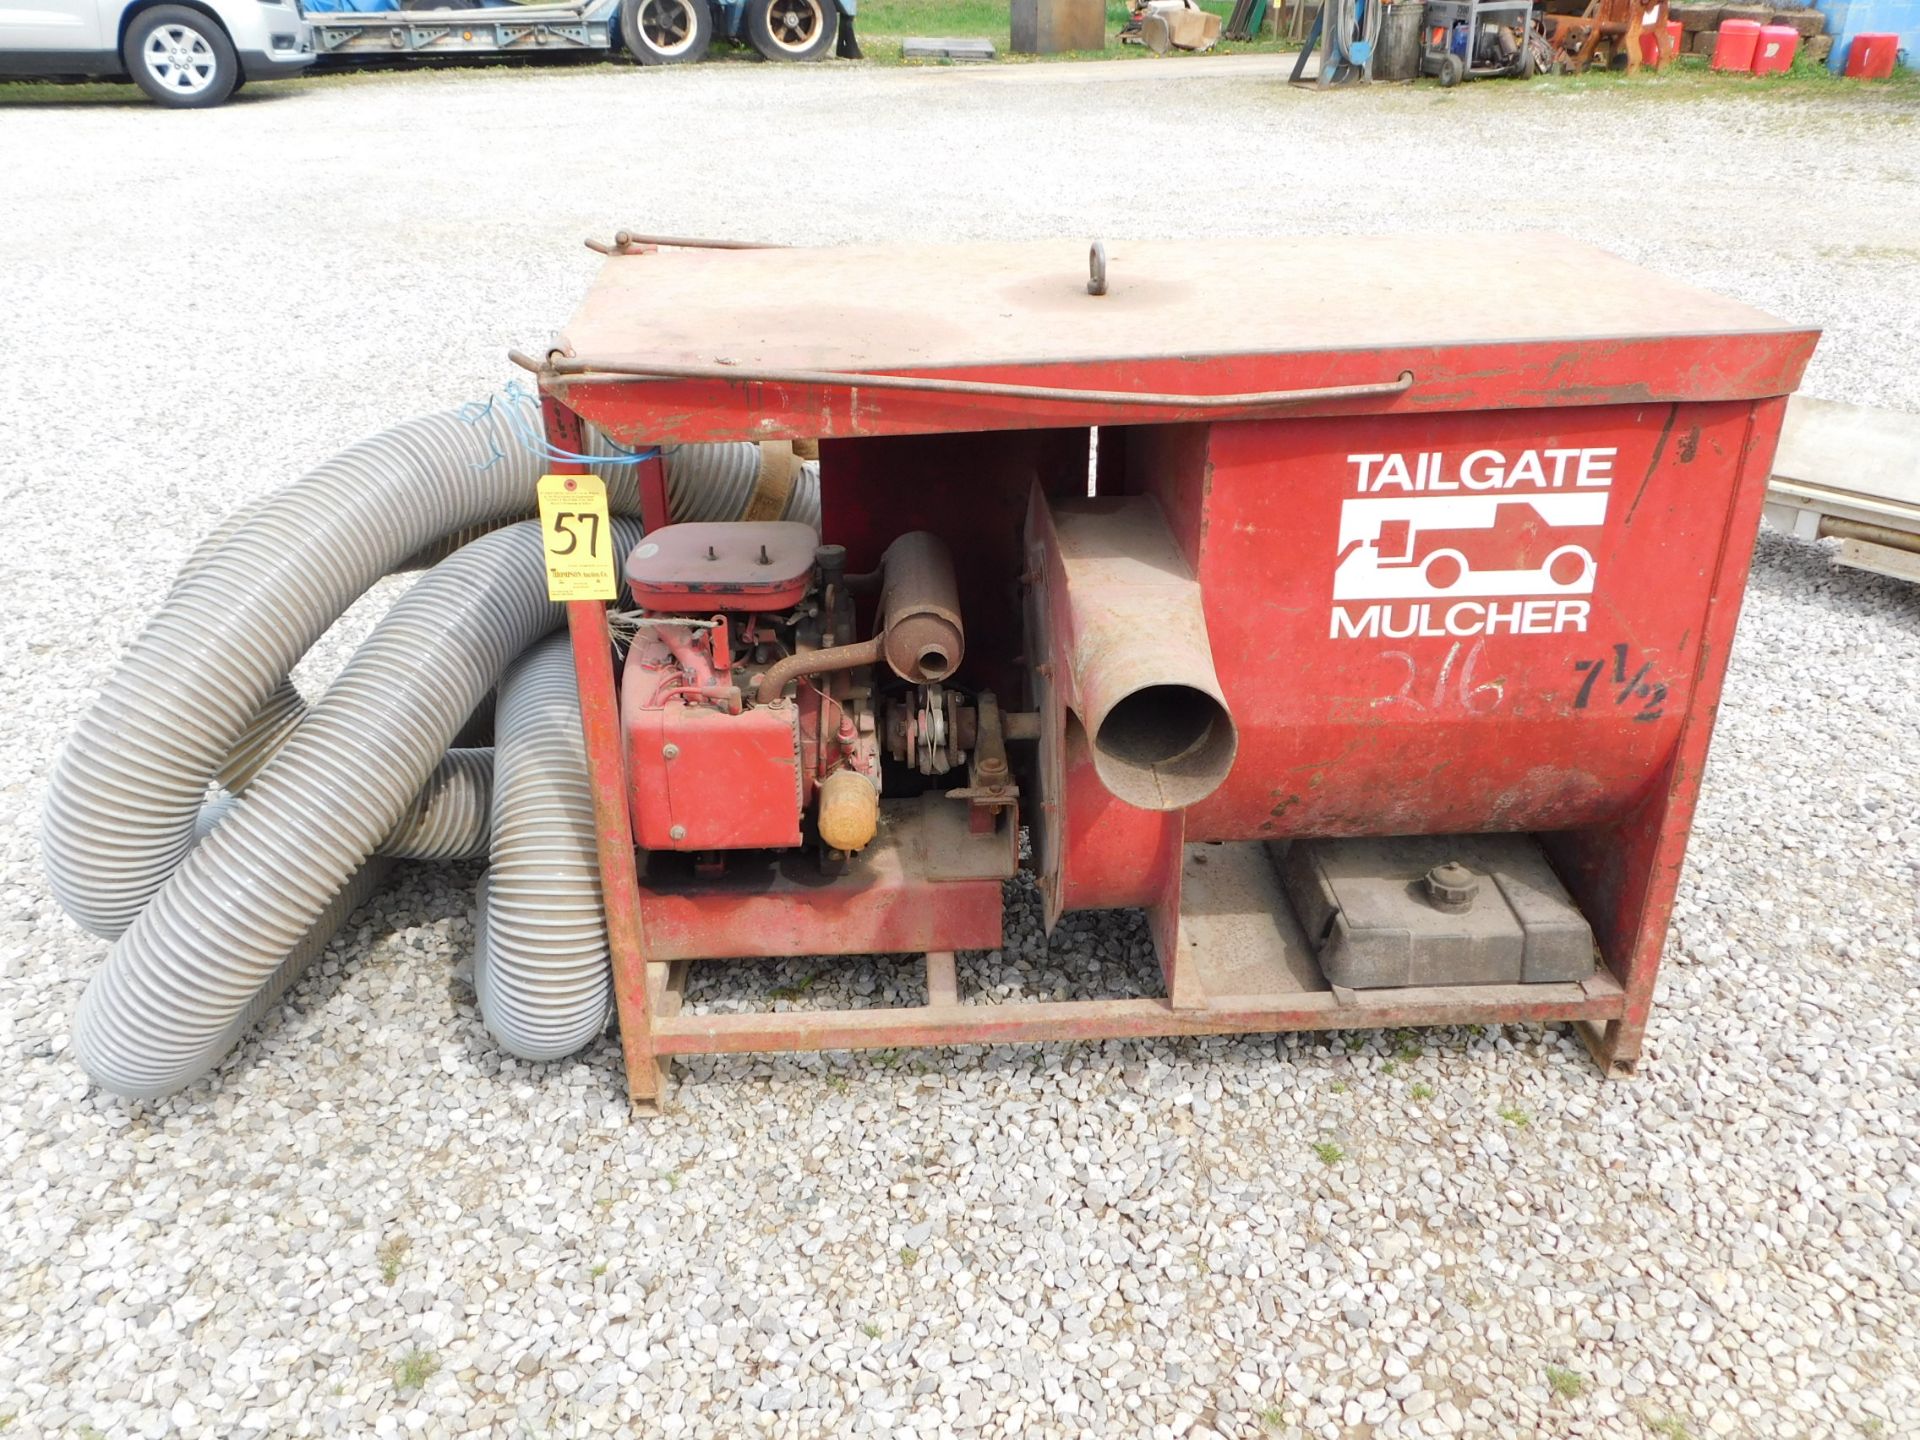 Tailgate Mulcher Gas Powered Straw Blower, s/n 23893518, Wisconsin Gas Engine